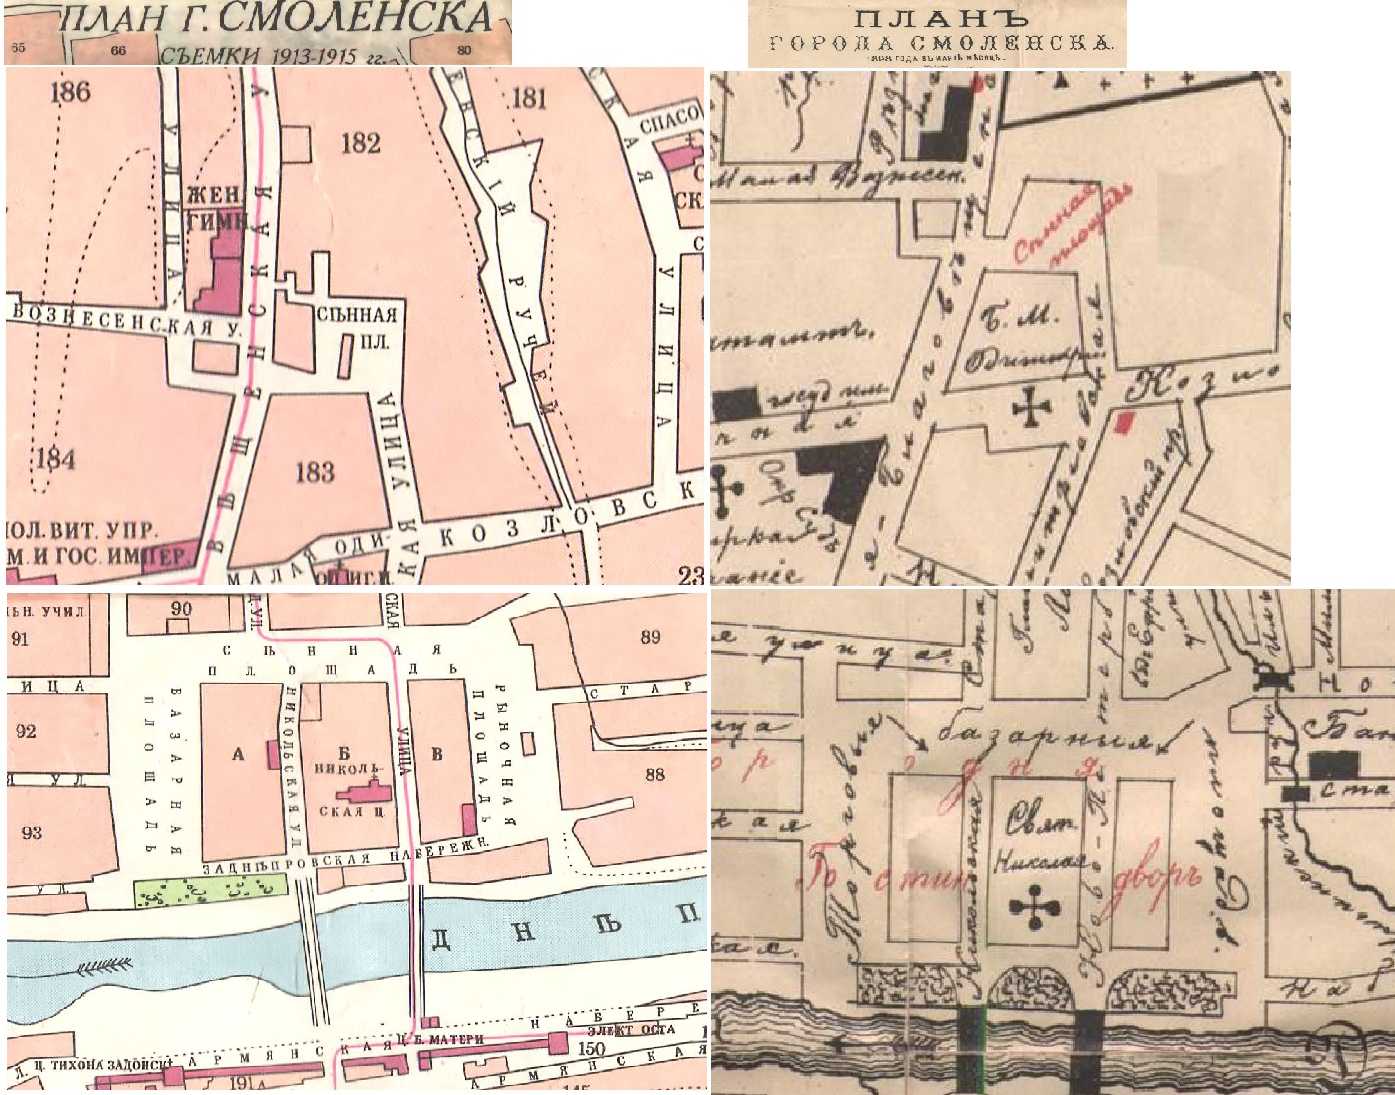 Сравнение планов города съемки 1898 и 1913-15 годов